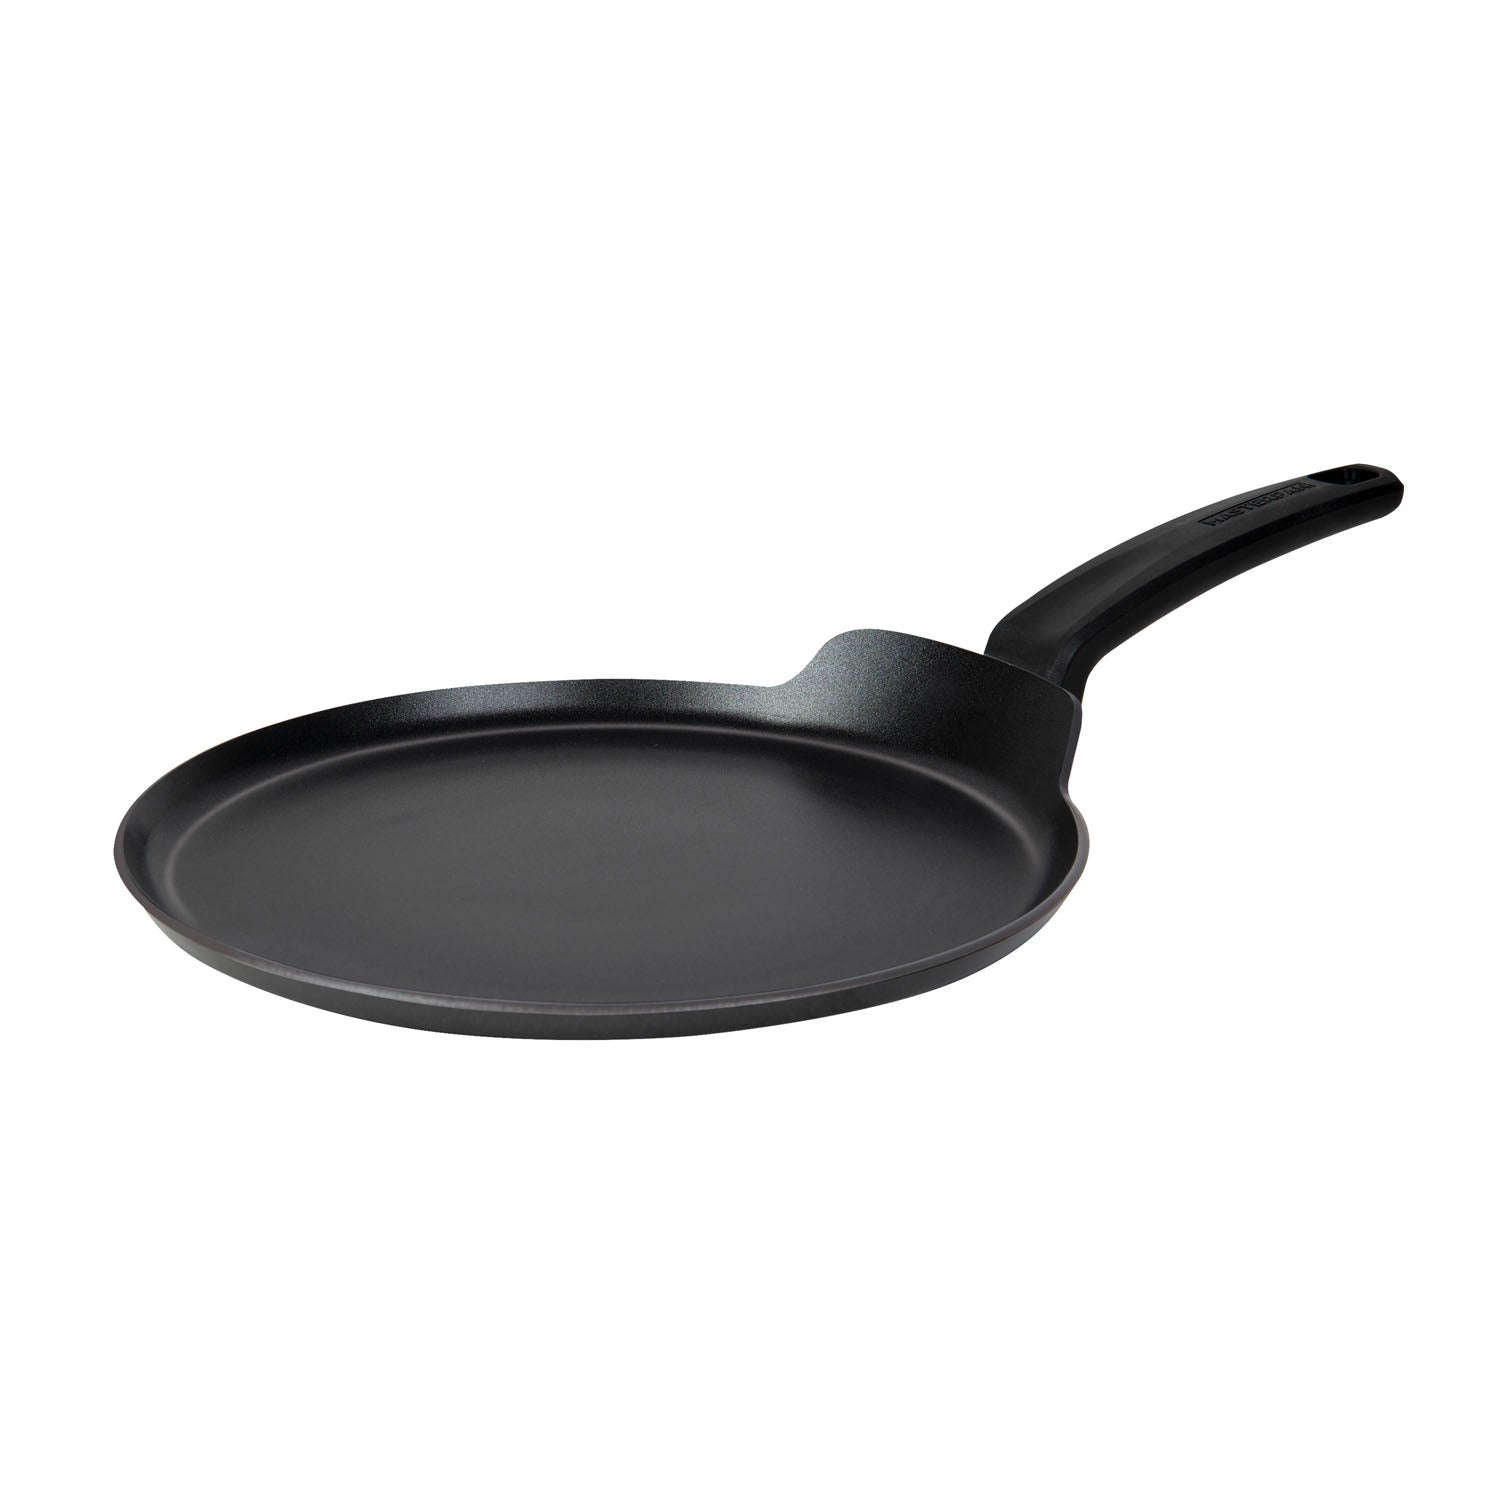 Tefal Elegance Aluminium Crepe Pan, Aluminium, Black, 45,1 x 27,9 x 5,6 cm